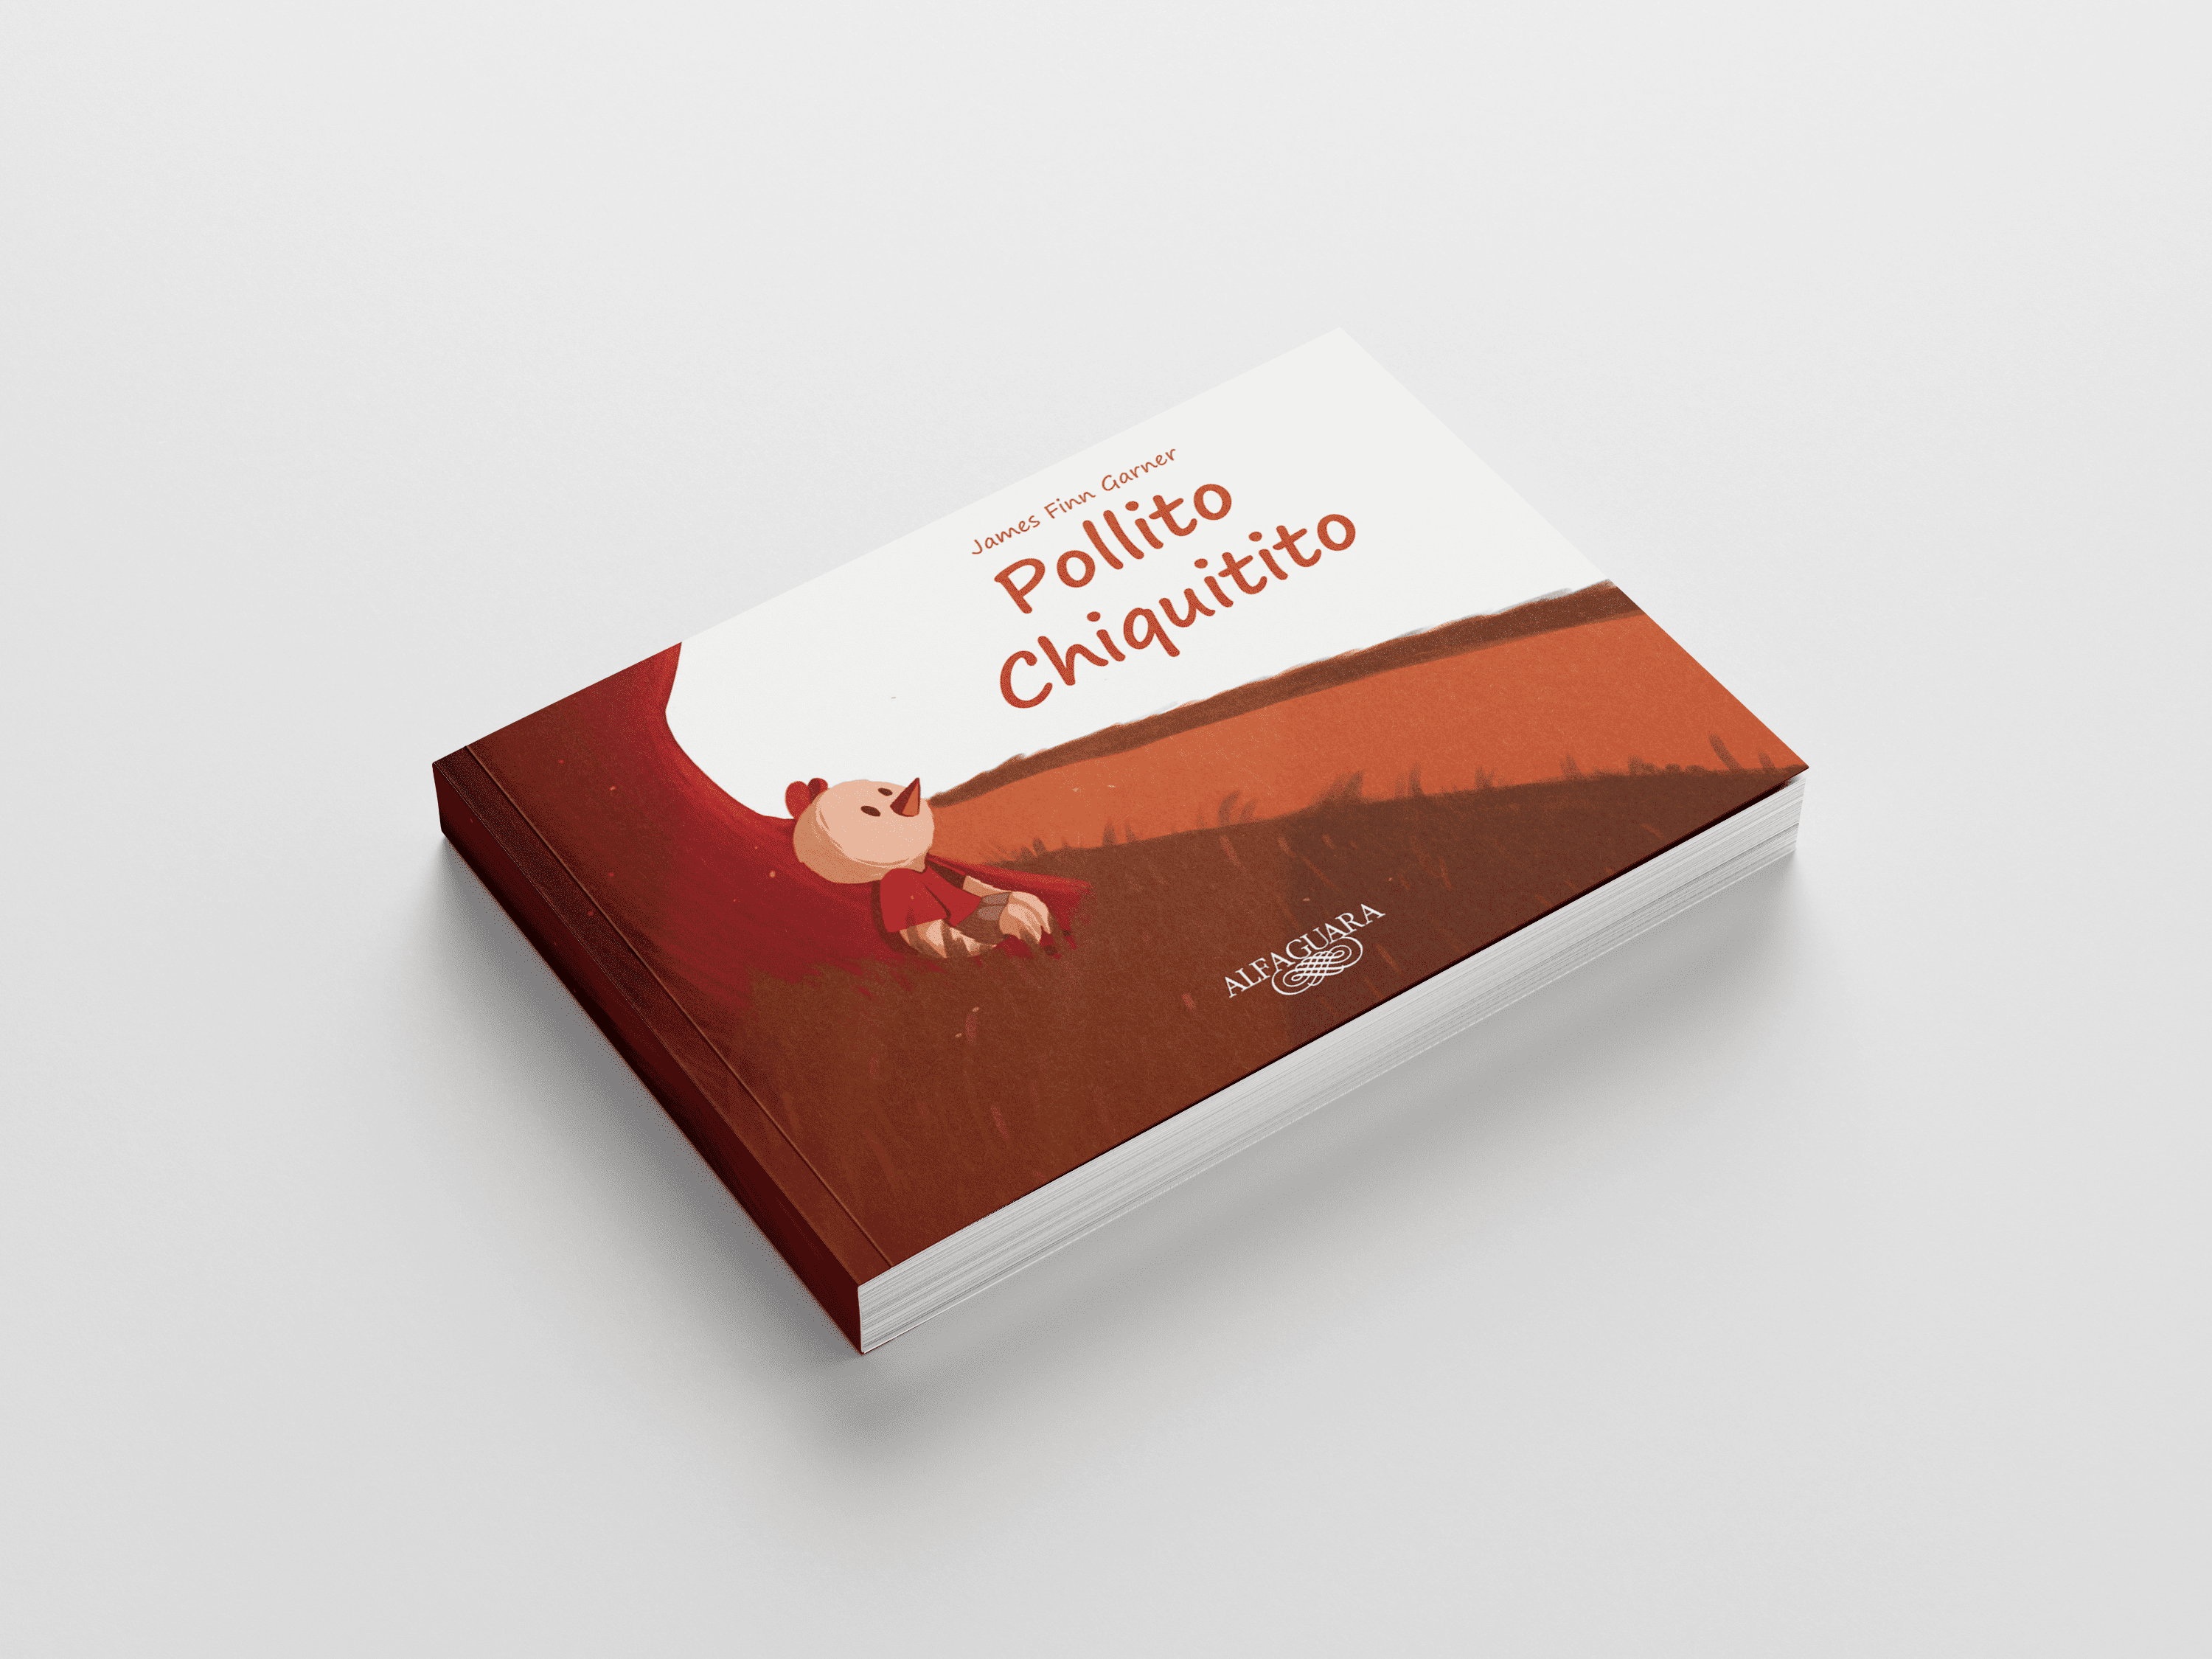 Libro ilustrado - cuento políticamente correcto 'Pollito Chiquitito' de James Finn Garner. by Yuliia Kalashnikova - Creative Work